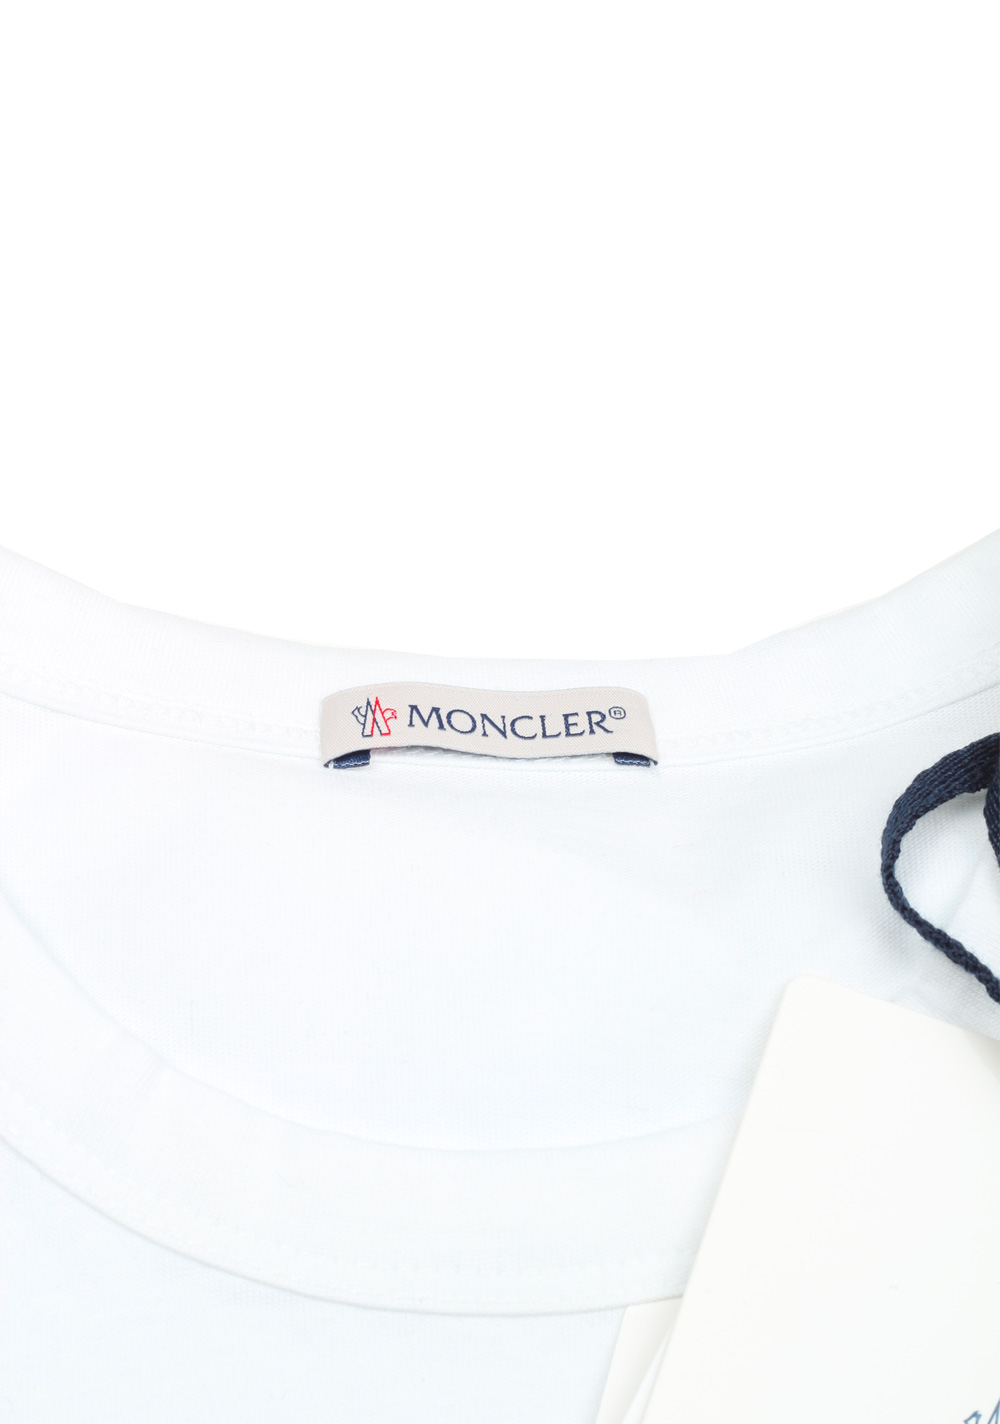 Moncler White Brand Patch Crew Neck Tee Shirt Size L / 40R U.S. | Costume Limité